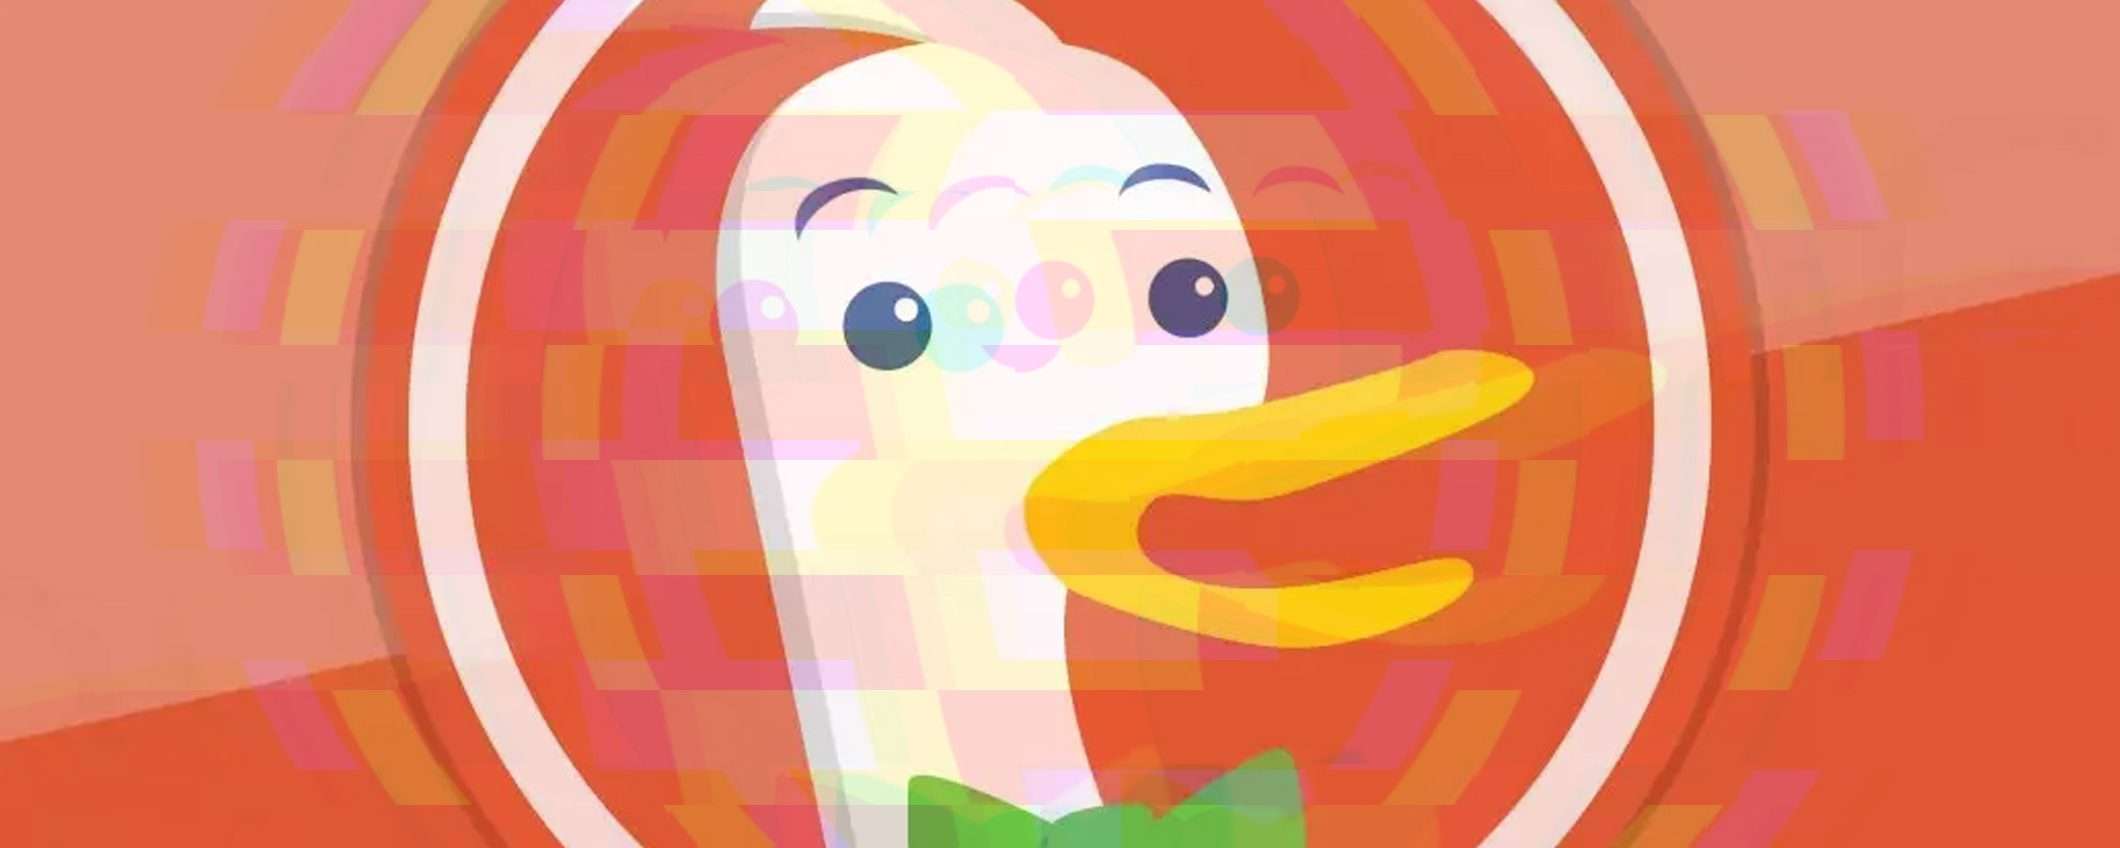 DuckDuckGo è down: cosa succede al motore di ricerca? (update)